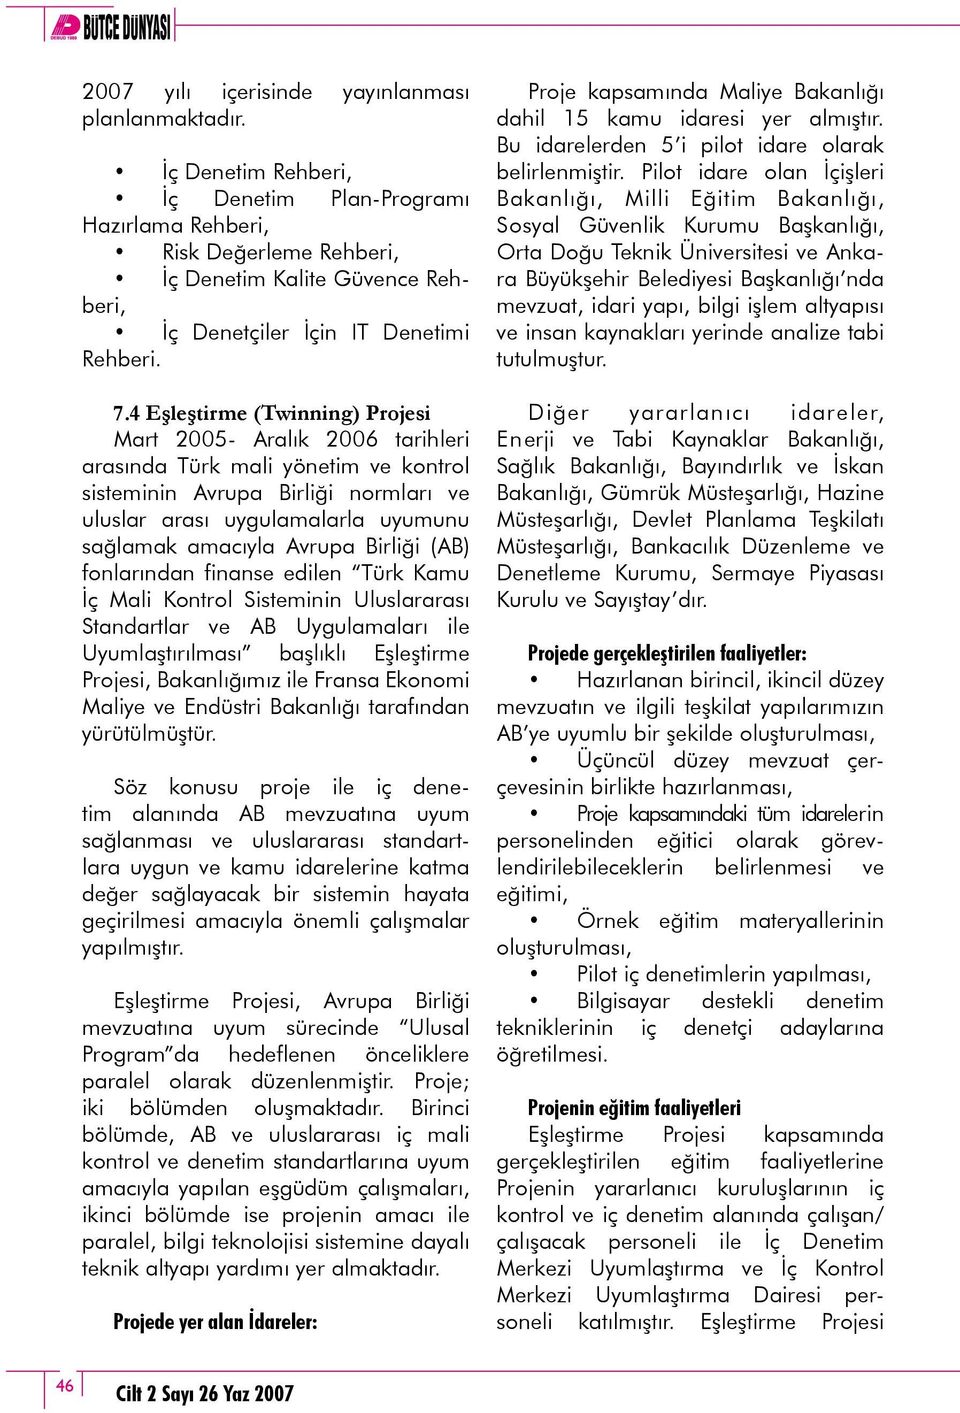 4 Eşleştirme (Twinning) Projesi Mart 2005- Aralık 2006 tarihleri arasında Türk mali yönetim ve kontrol sisteminin Avrupa Birliği normları ve uluslar arası uygulamalarla uyumunu sağlamak amacıyla